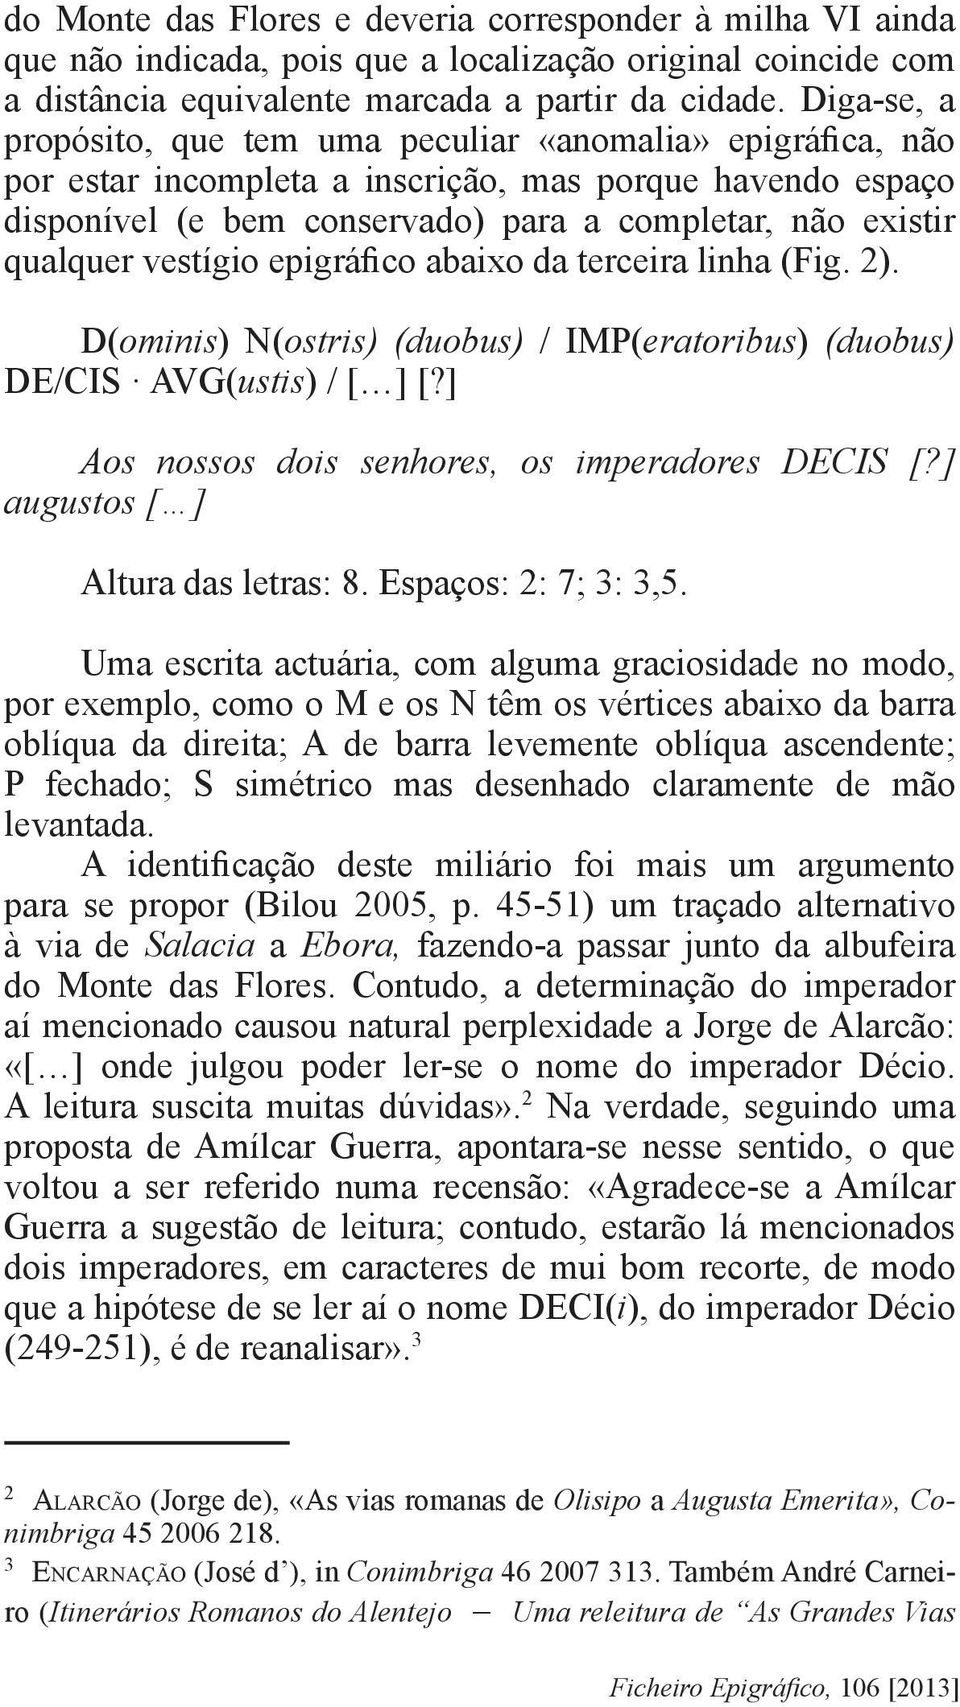 vestígio epigráfico abaixo da terceira linha (Fig. 2). D(ominis) N(ostris) (duobus) / IMP(eratoribus) (duobus) DE/CIS AVG(ustis) / [ ] [?] Aos nossos dois senhores, os imperadores DECIS [?